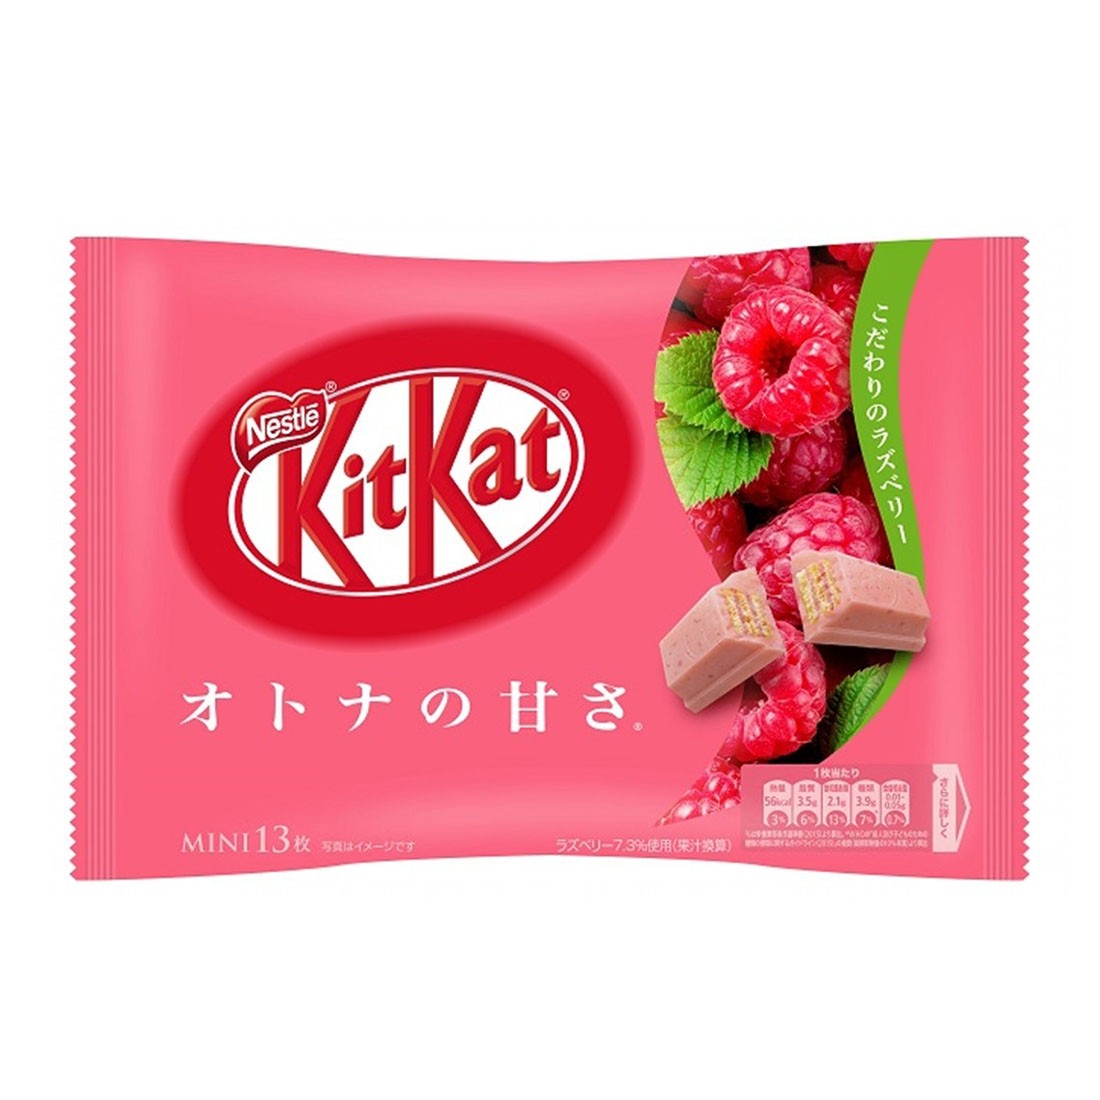 Nestlé KitKat Adult Sweetness 13 Raspberries